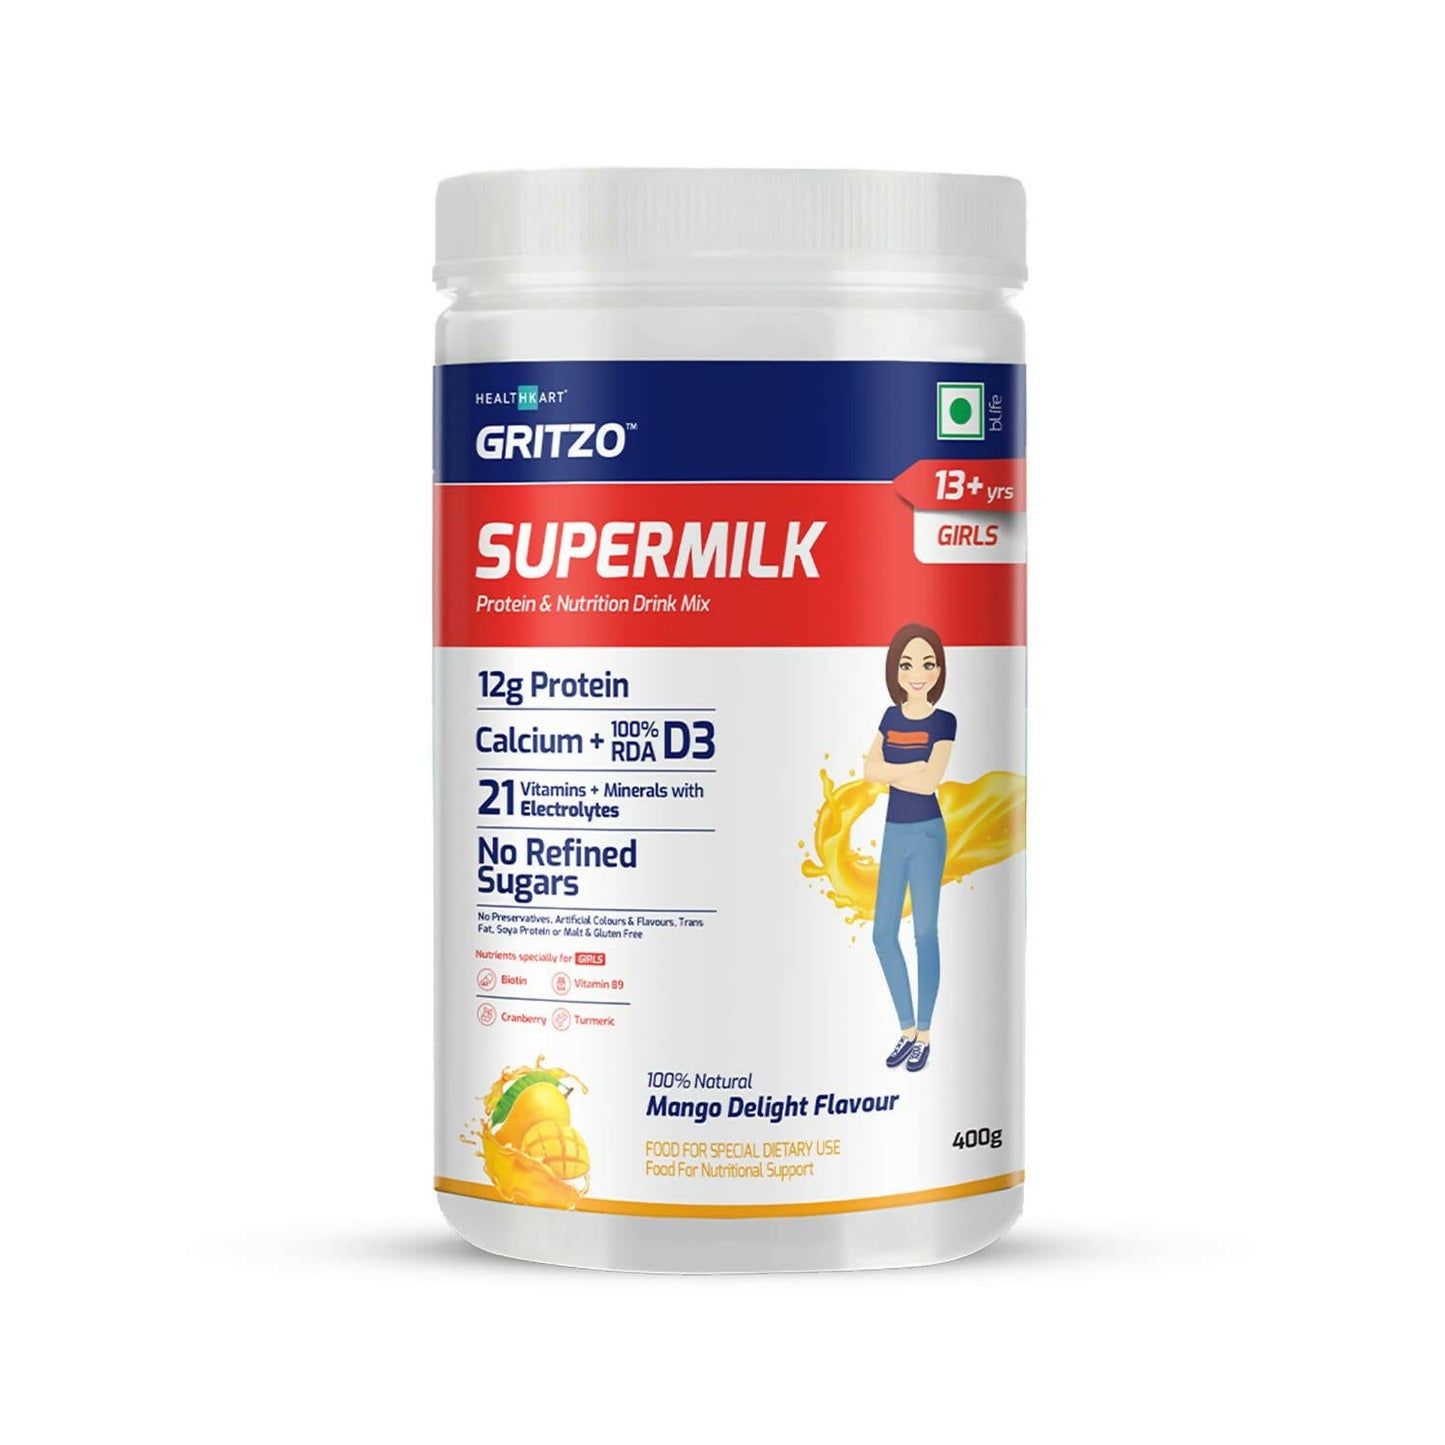 Gritzo SuperMilk 13+y Health Drink for Girls - BUDNE